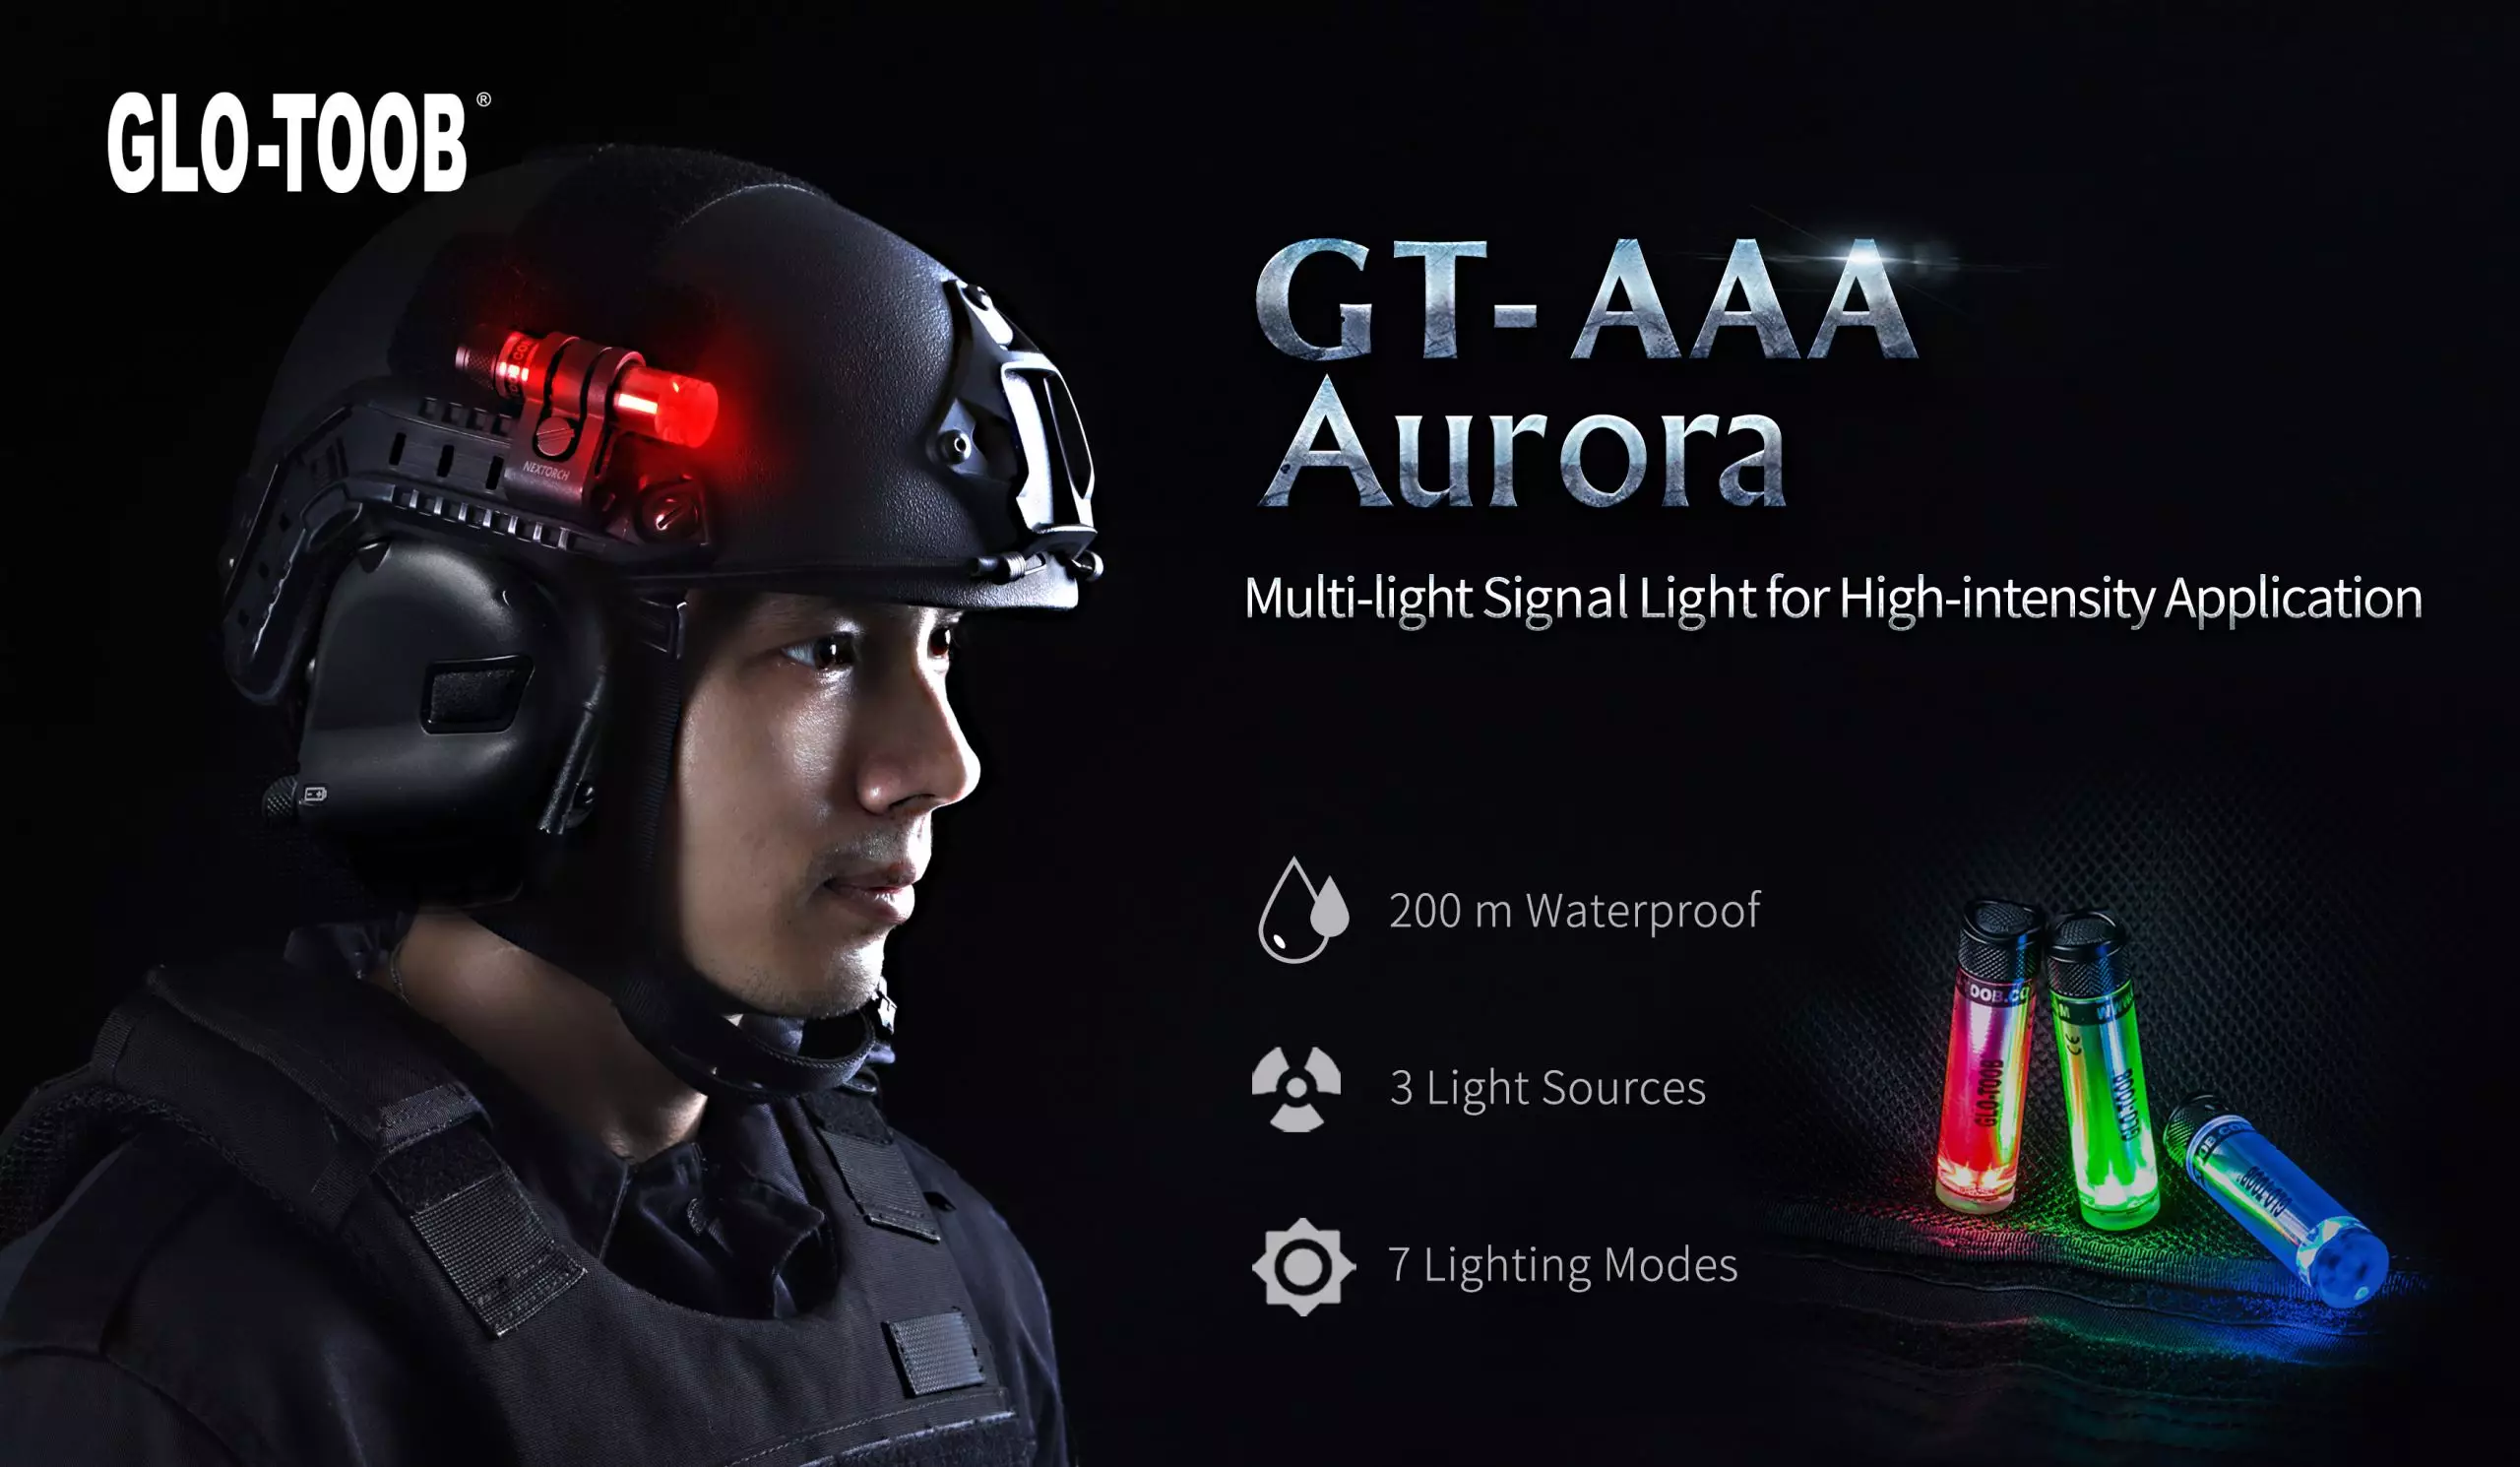 NEXTORCH GT-AAA  Red / Green / Blue LEDs Aurora Signal Light